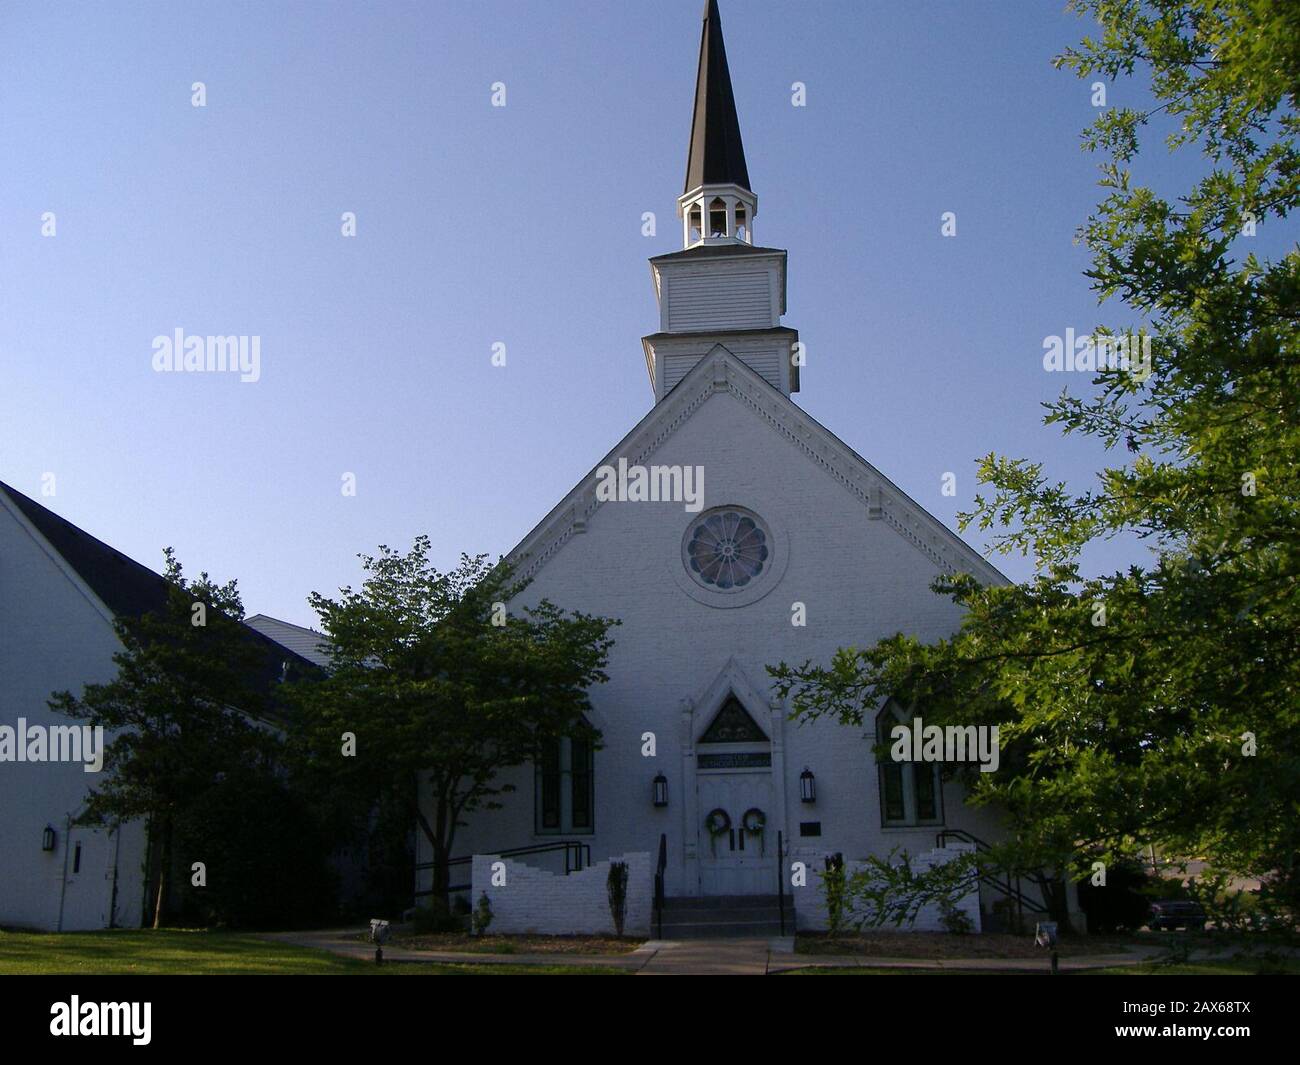 Inglés: Parte delantera de la Iglesia Metodista Episcopal de Brandeburgo,  ubicado en 215 Broadway en Brandeburgo, Kentucky, Estados Unidos.  Construido en 1855, está inscrita en el Registro Nacional de Lugares  Históricos. Esta